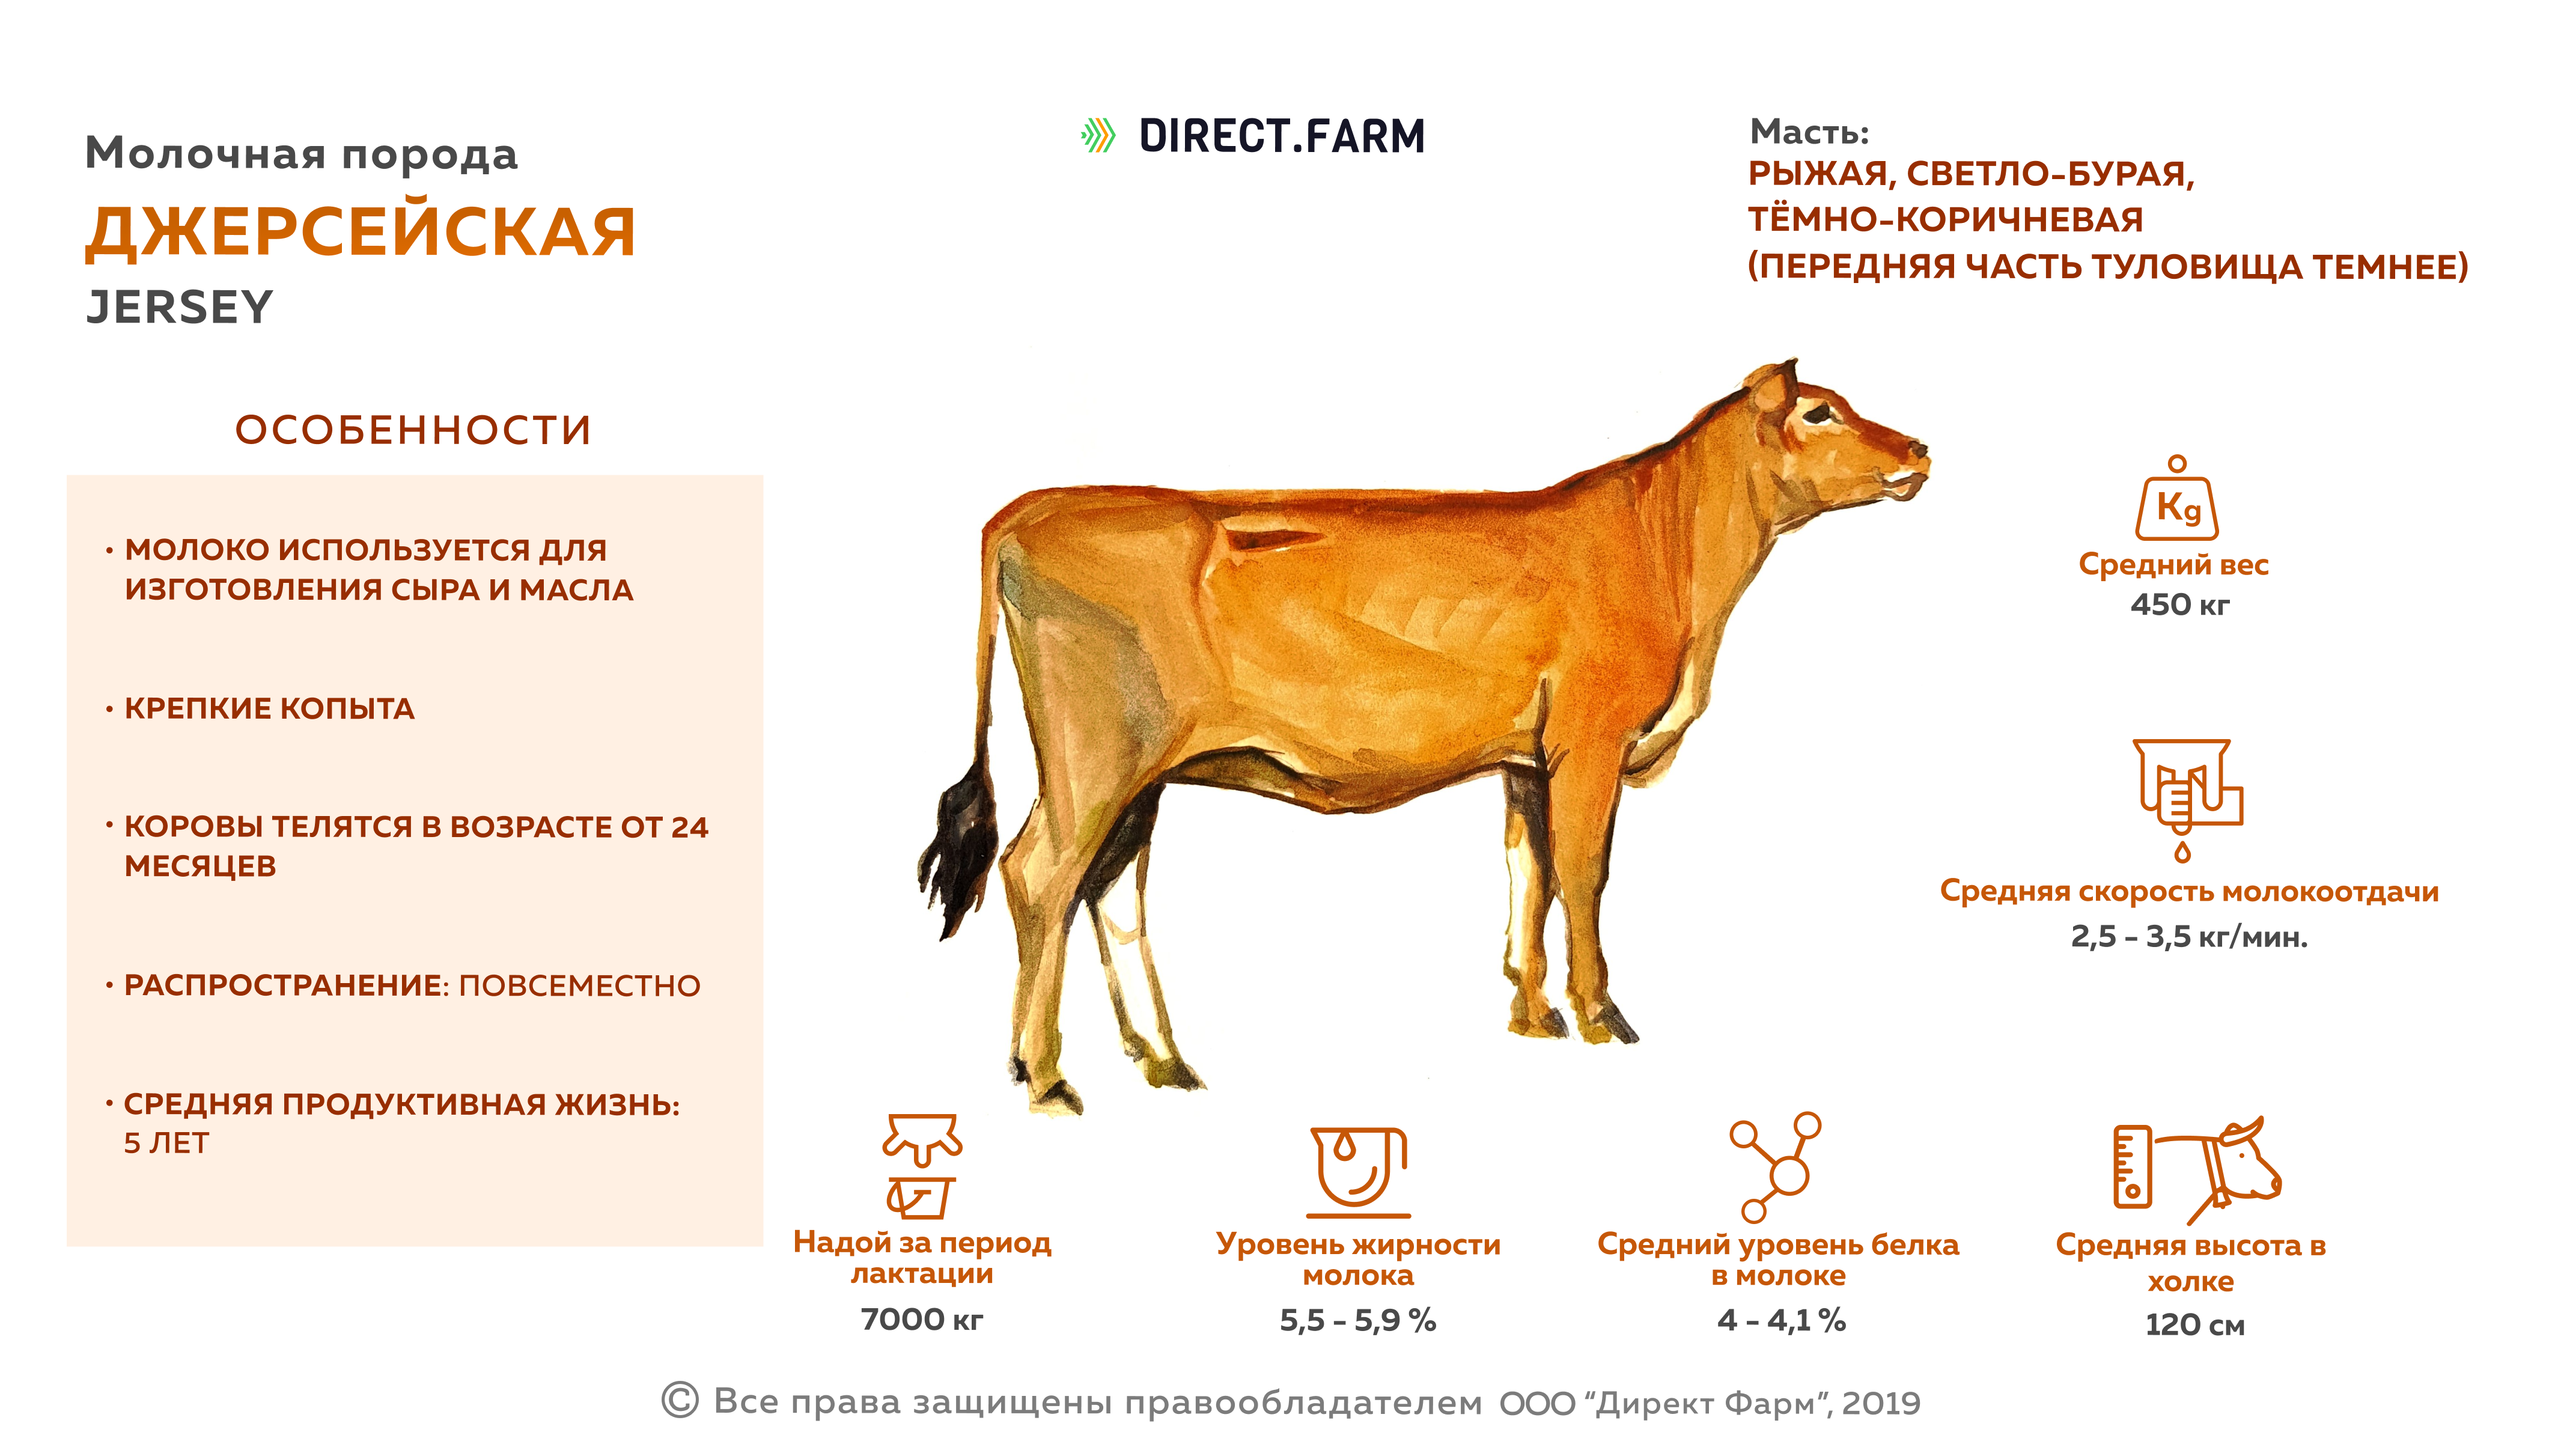 Джерсейская порода коров характеристики молока. Джерсейская порода КРС. Джерсейская порода коров убойный выход. Джерсейская корова описание породы.